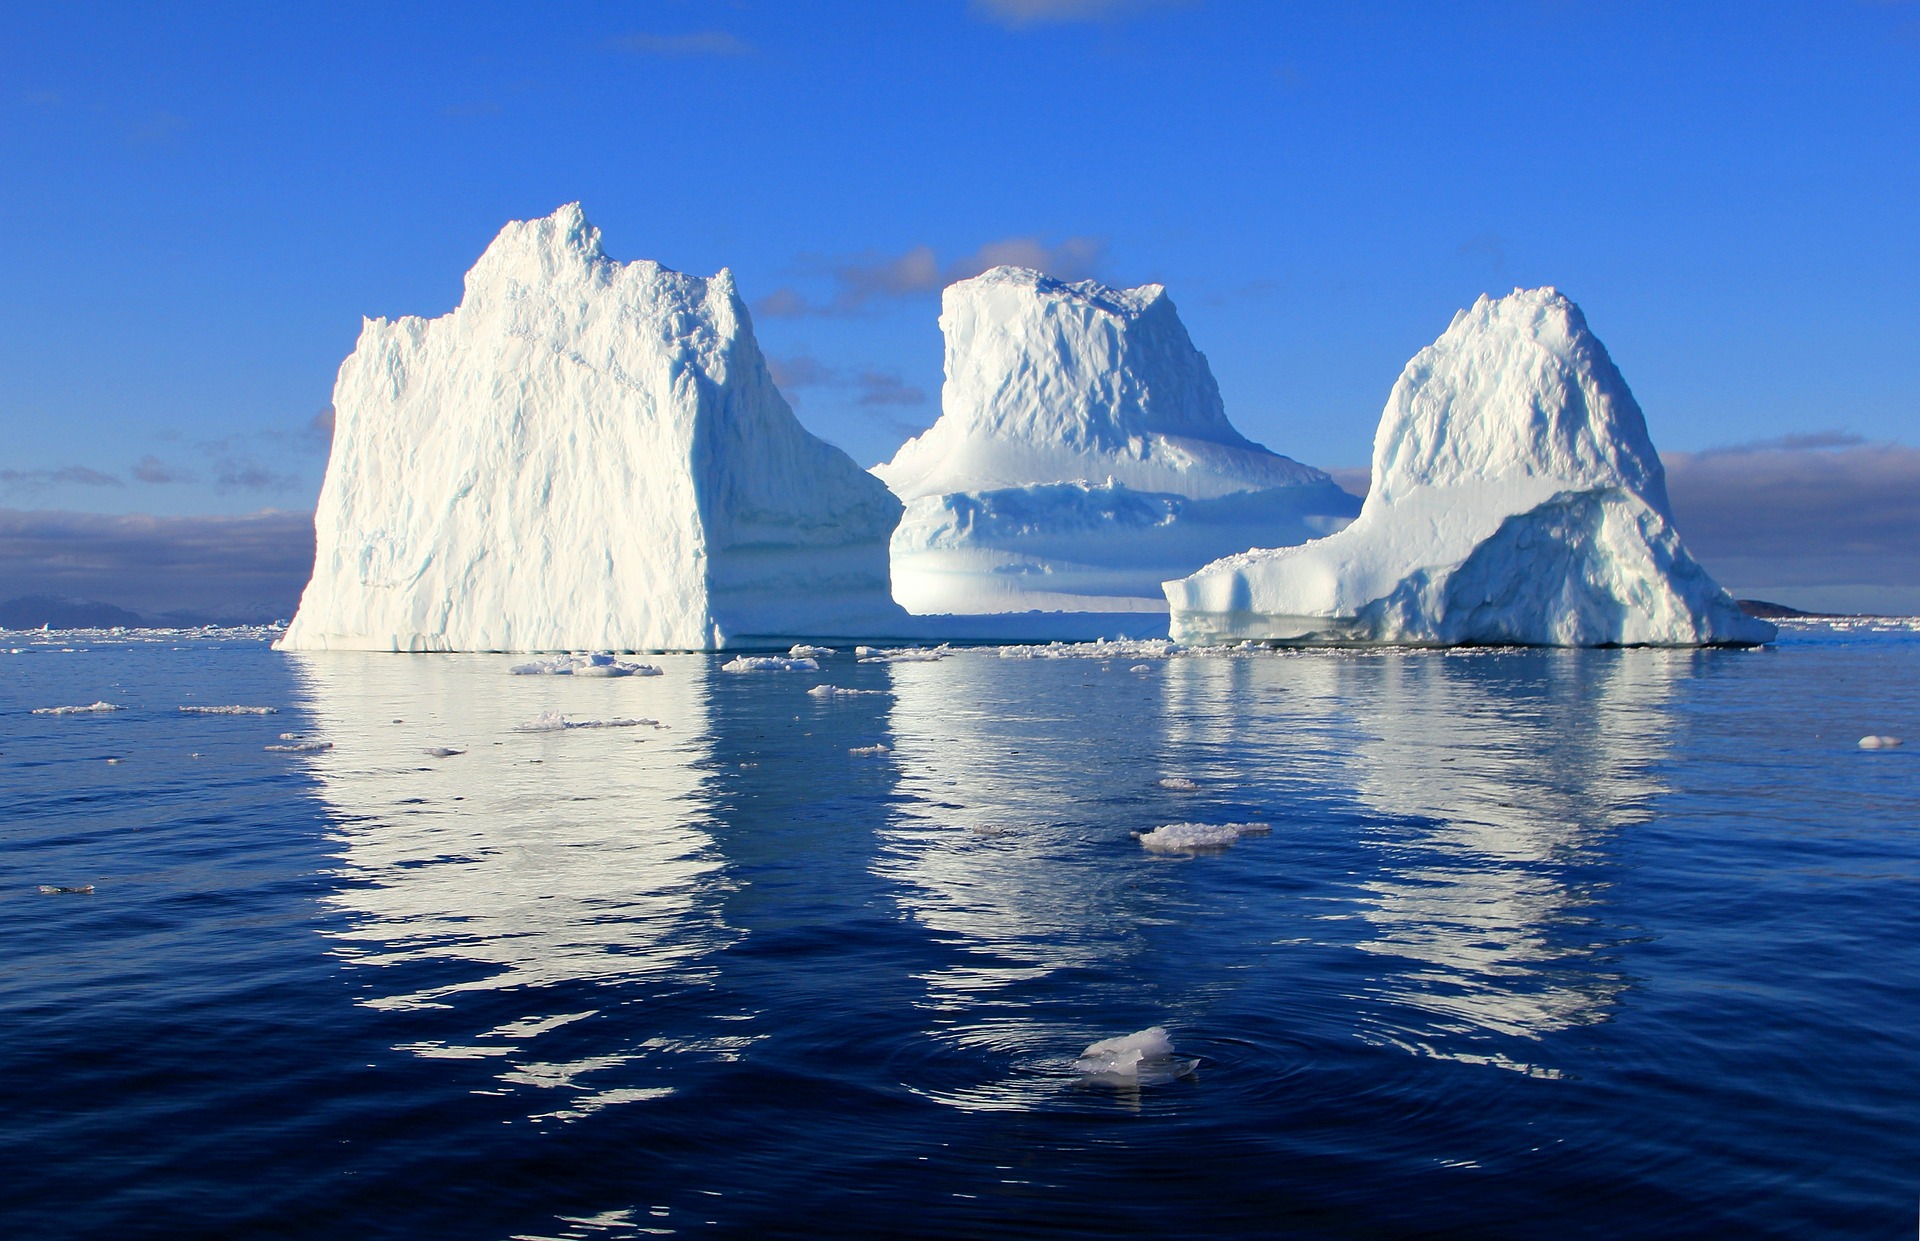 Арктика сегодня: финансы, транспорт и диверсификация